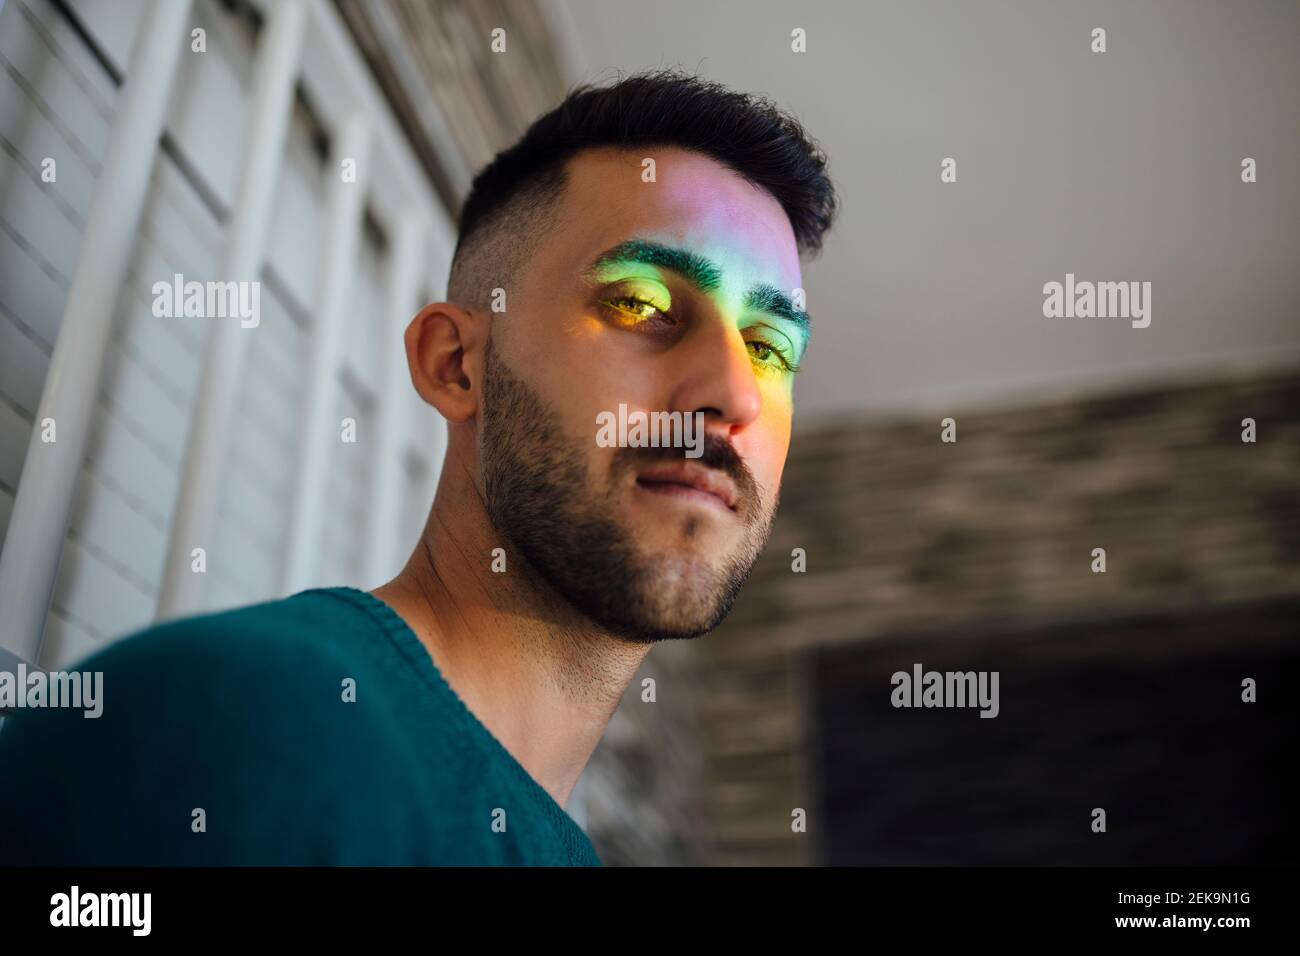 Luce arcobaleno che colpisce il volto del giovane uomo che guarda verso il basso fotocamera Foto Stock